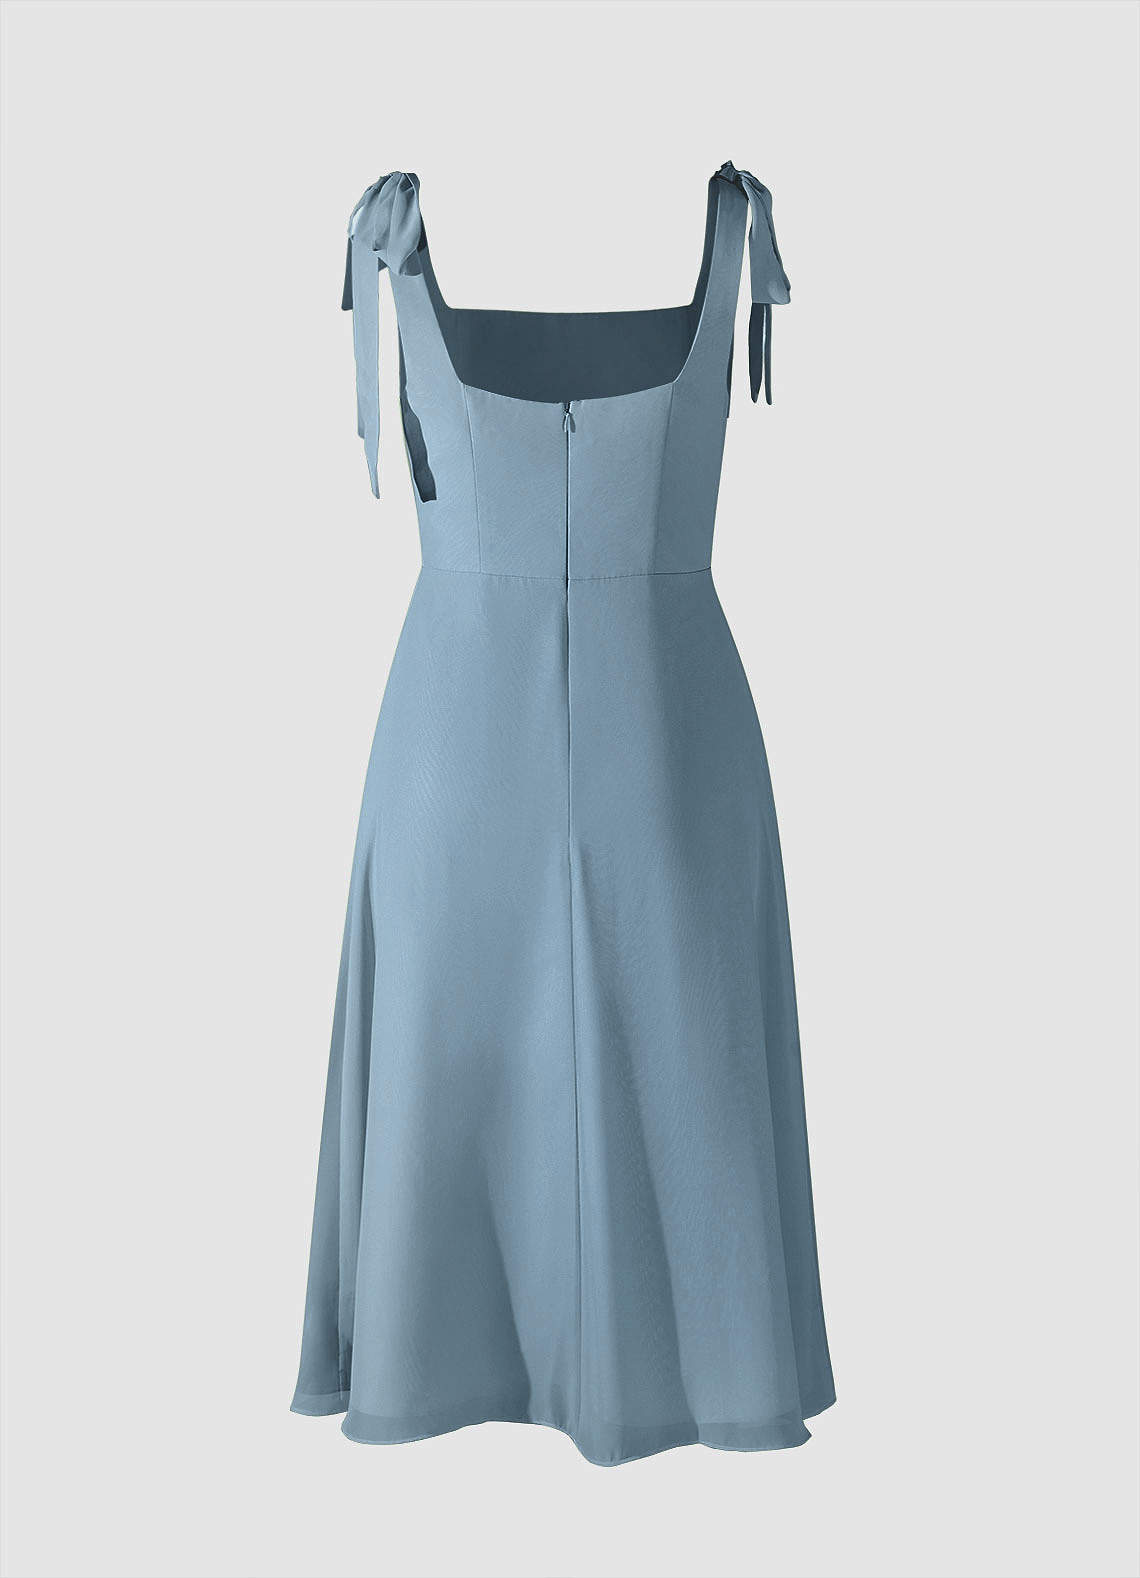 Bow Tie Dusty Blue Chiffon Midi Dress With Slit image1